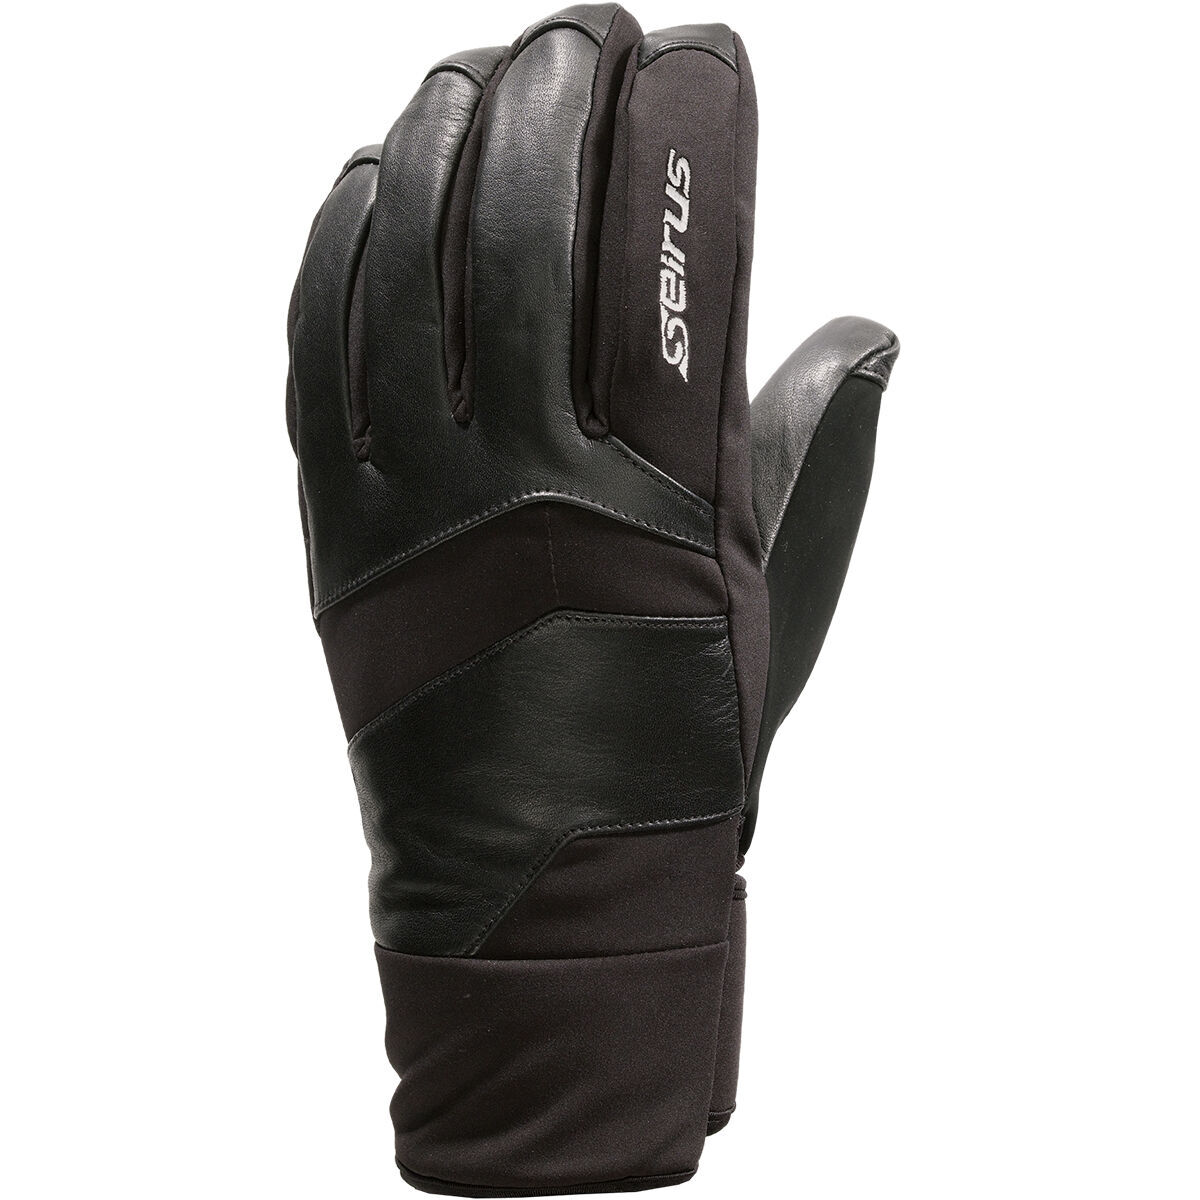 Seirus Men's Xtreme All Weather Edge Gloves